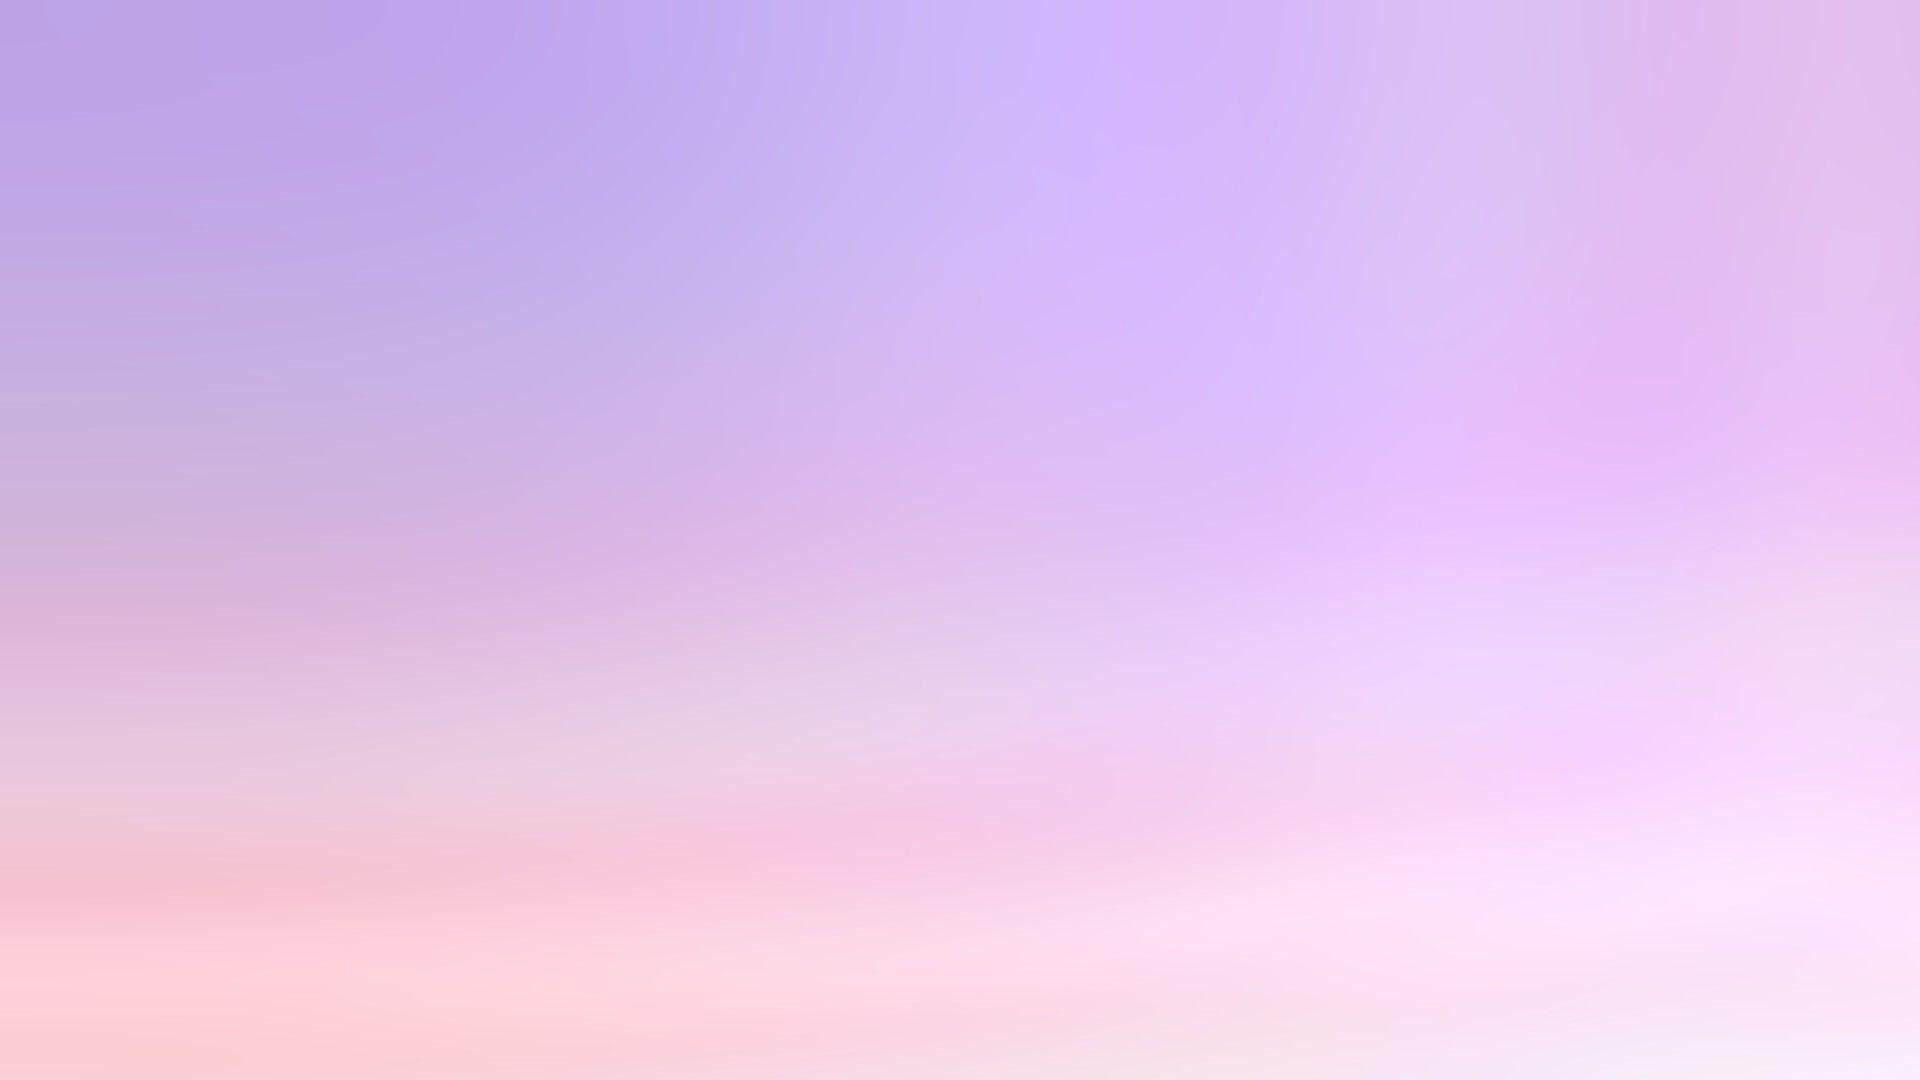 Nếu bạn yêu thích màu tím pastel, hãy xem hình nền tumblr tím pastel. Với những họa tiết tinh tế và gam màu tím nhạt, hình nền này sẽ mang lại cho bạn một không gian tươi trẻ, sáng tạo và đầy cảm hứng.